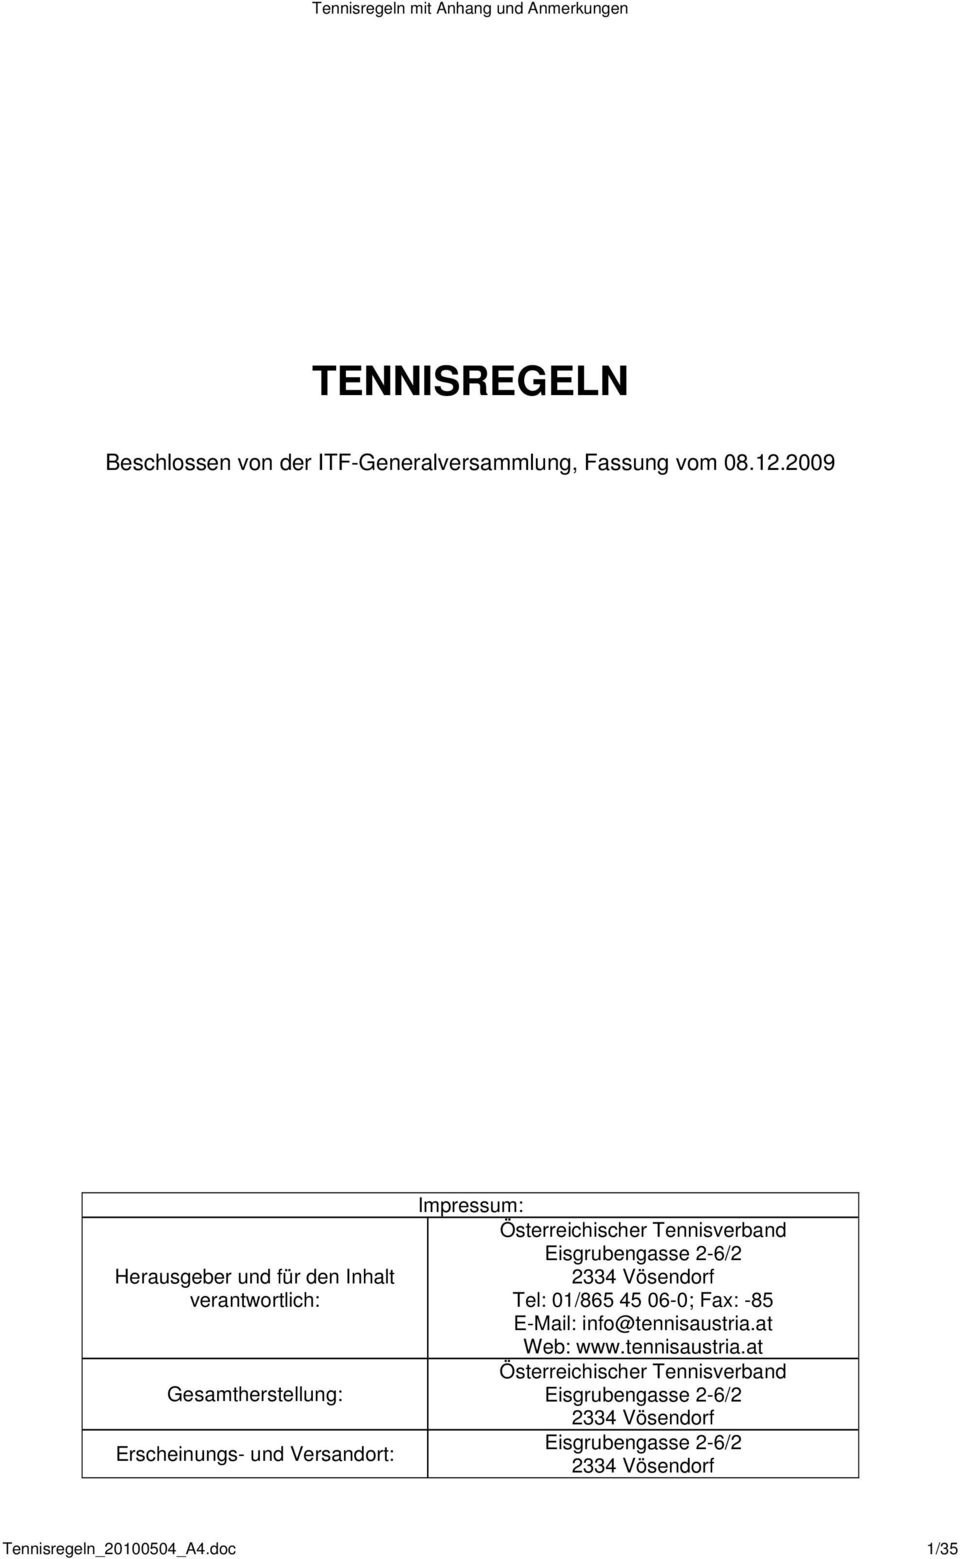 Österreichischer Tennisverband Eisgrubengasse 2-6/2 2334 Vösendorf Tel: 01/865 45 06-0; Fax: -85 E-Mail: